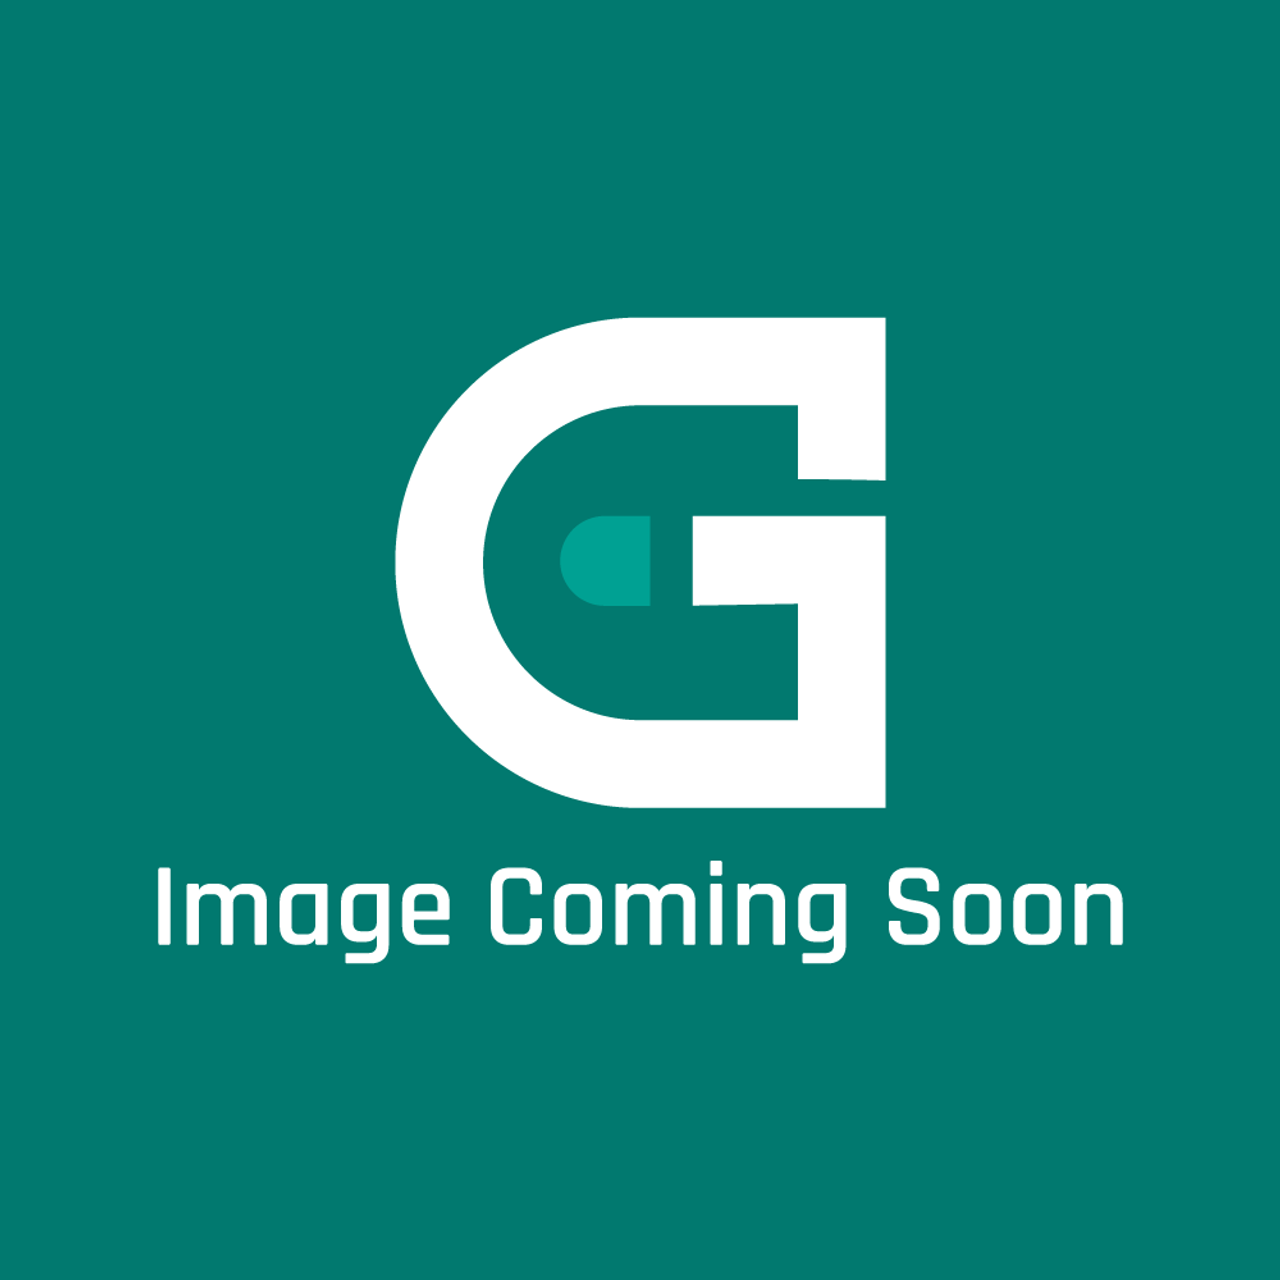 Groen N65098 - Die #Z4135 Tipper - Image Coming Soon!